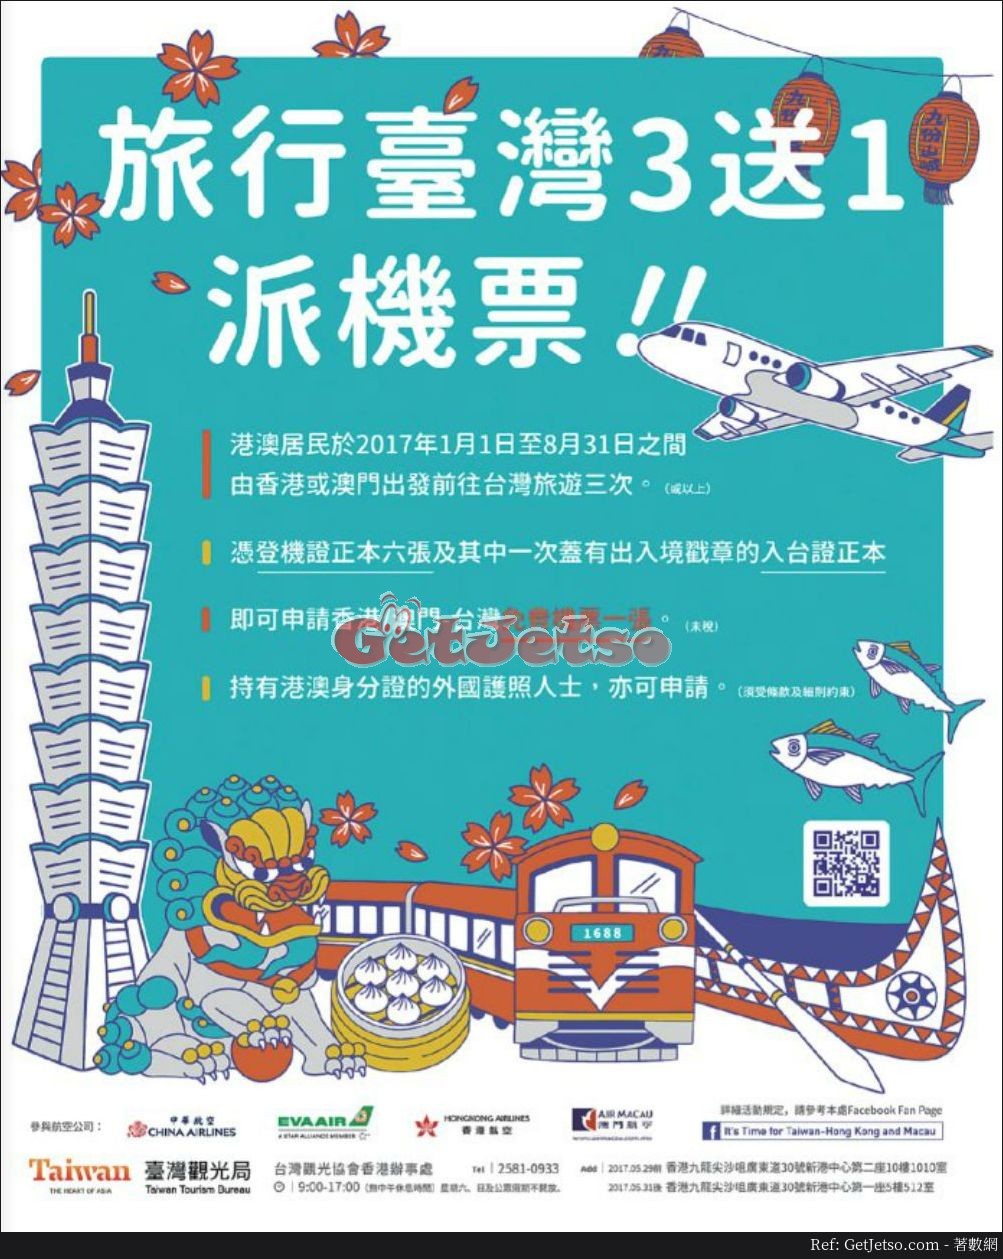 旅行台灣3次送1次免費機票優惠(至17年8月31日)圖片1